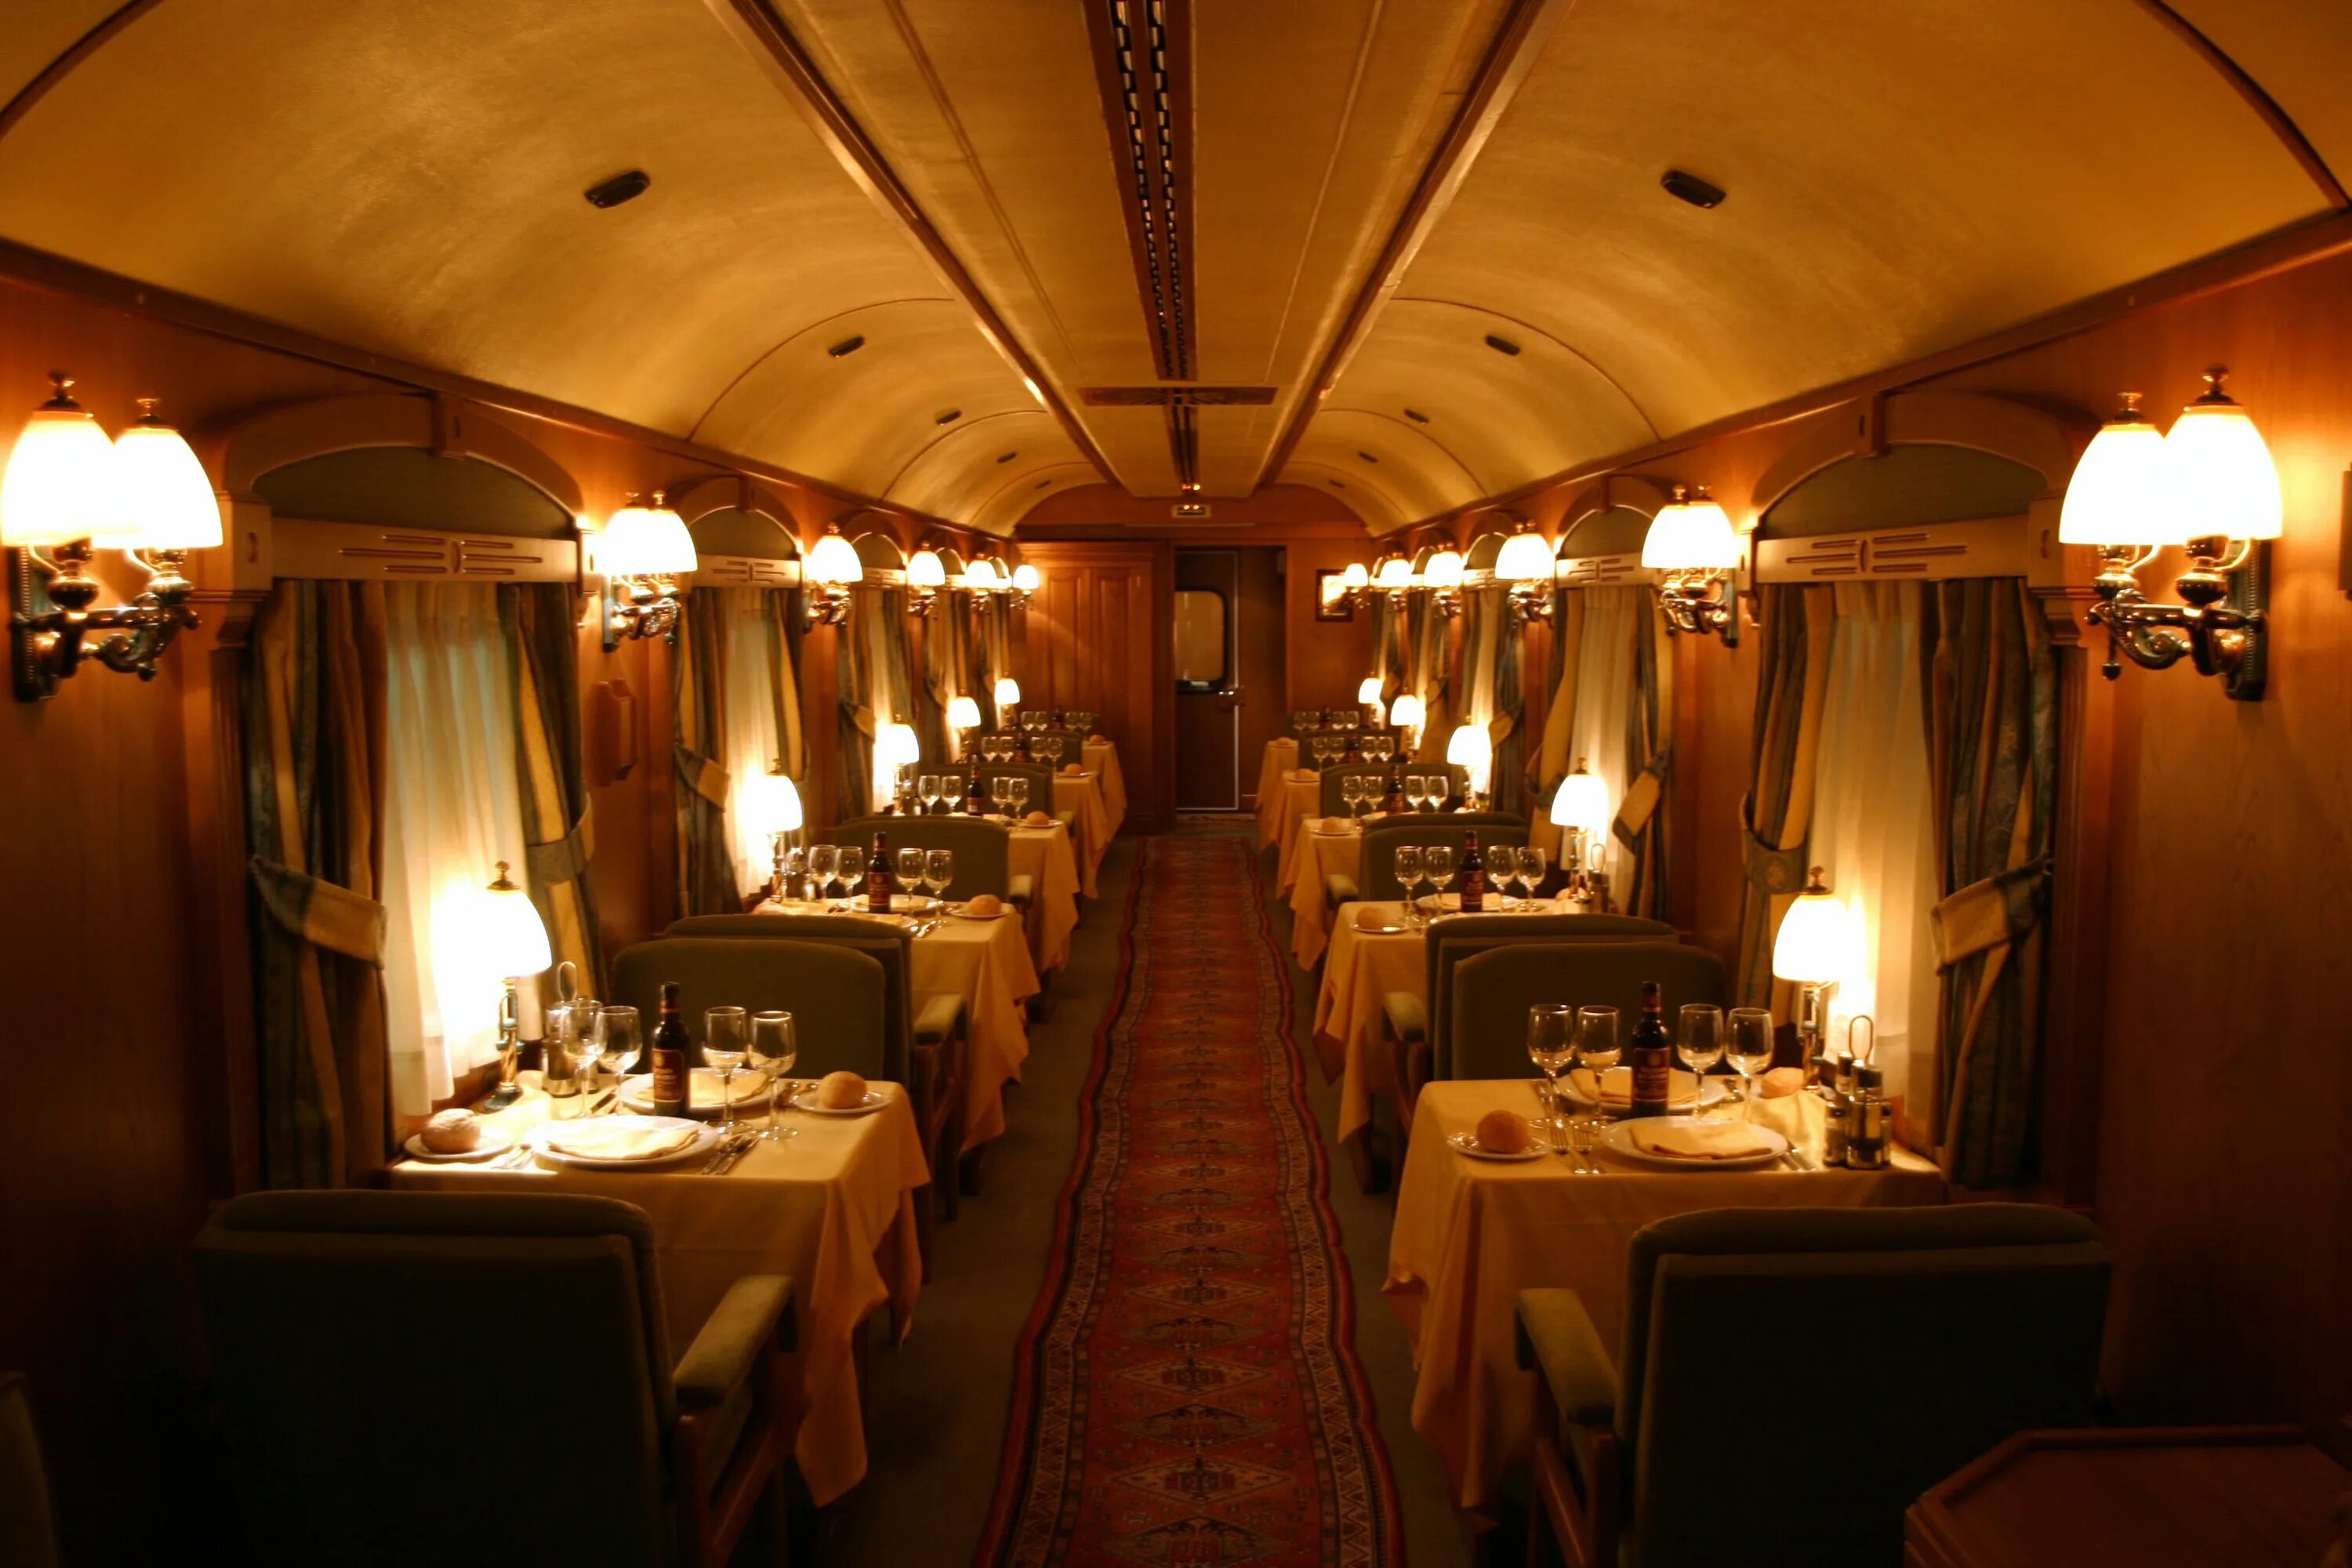 Dining car. El Transcantabrico поезд. Вагон-ресторан Восточный экспресс 19 века. Поезд Golden Eagle («золотой Орел»). Интерьер ресторанов поезда Ориент экспресс.